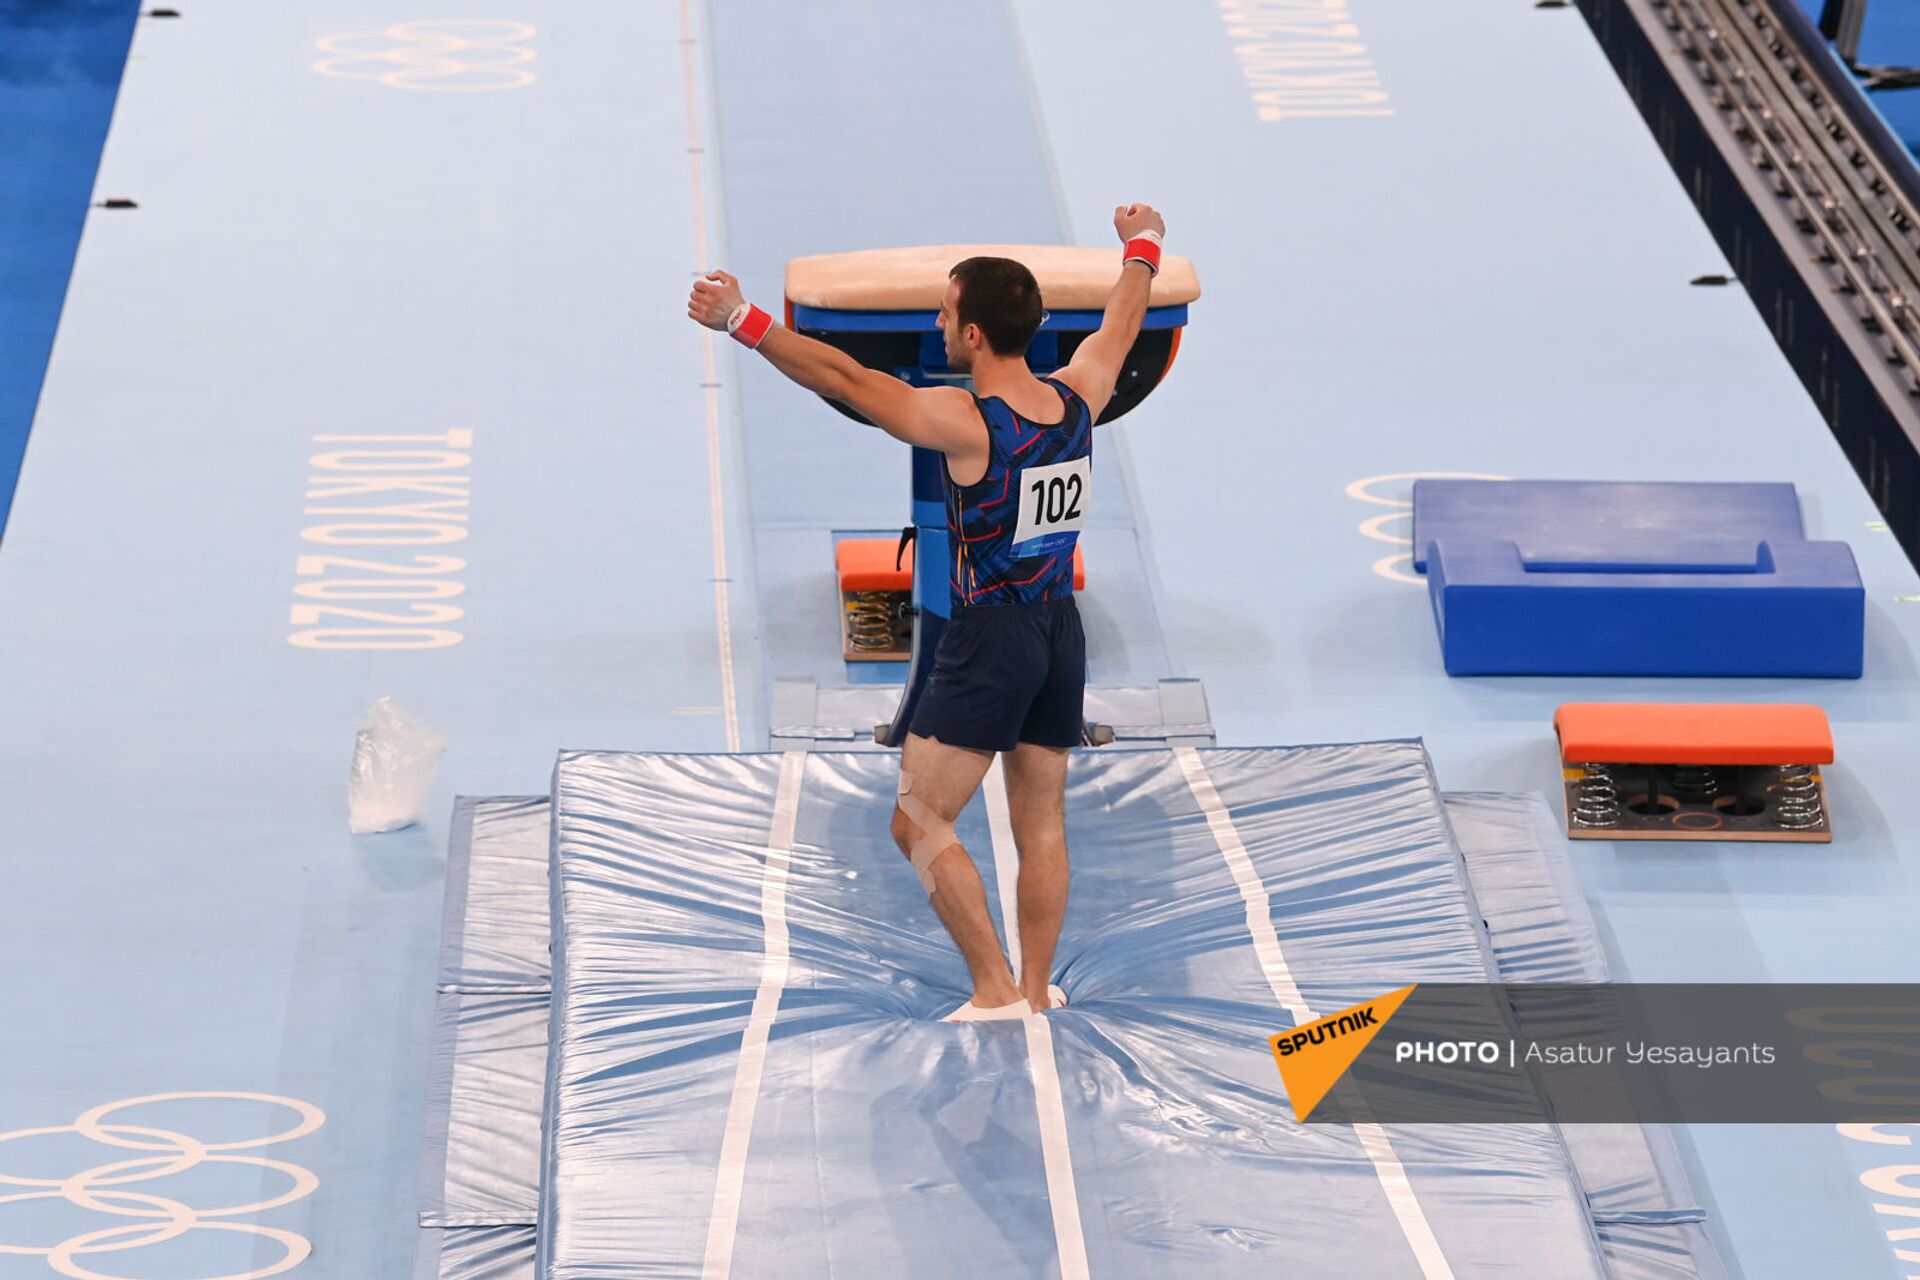 Армянский гимнаст Артур Давтян блестяще выступил в Токио - фото - Sputnik Армения, 1920, 24.07.2021